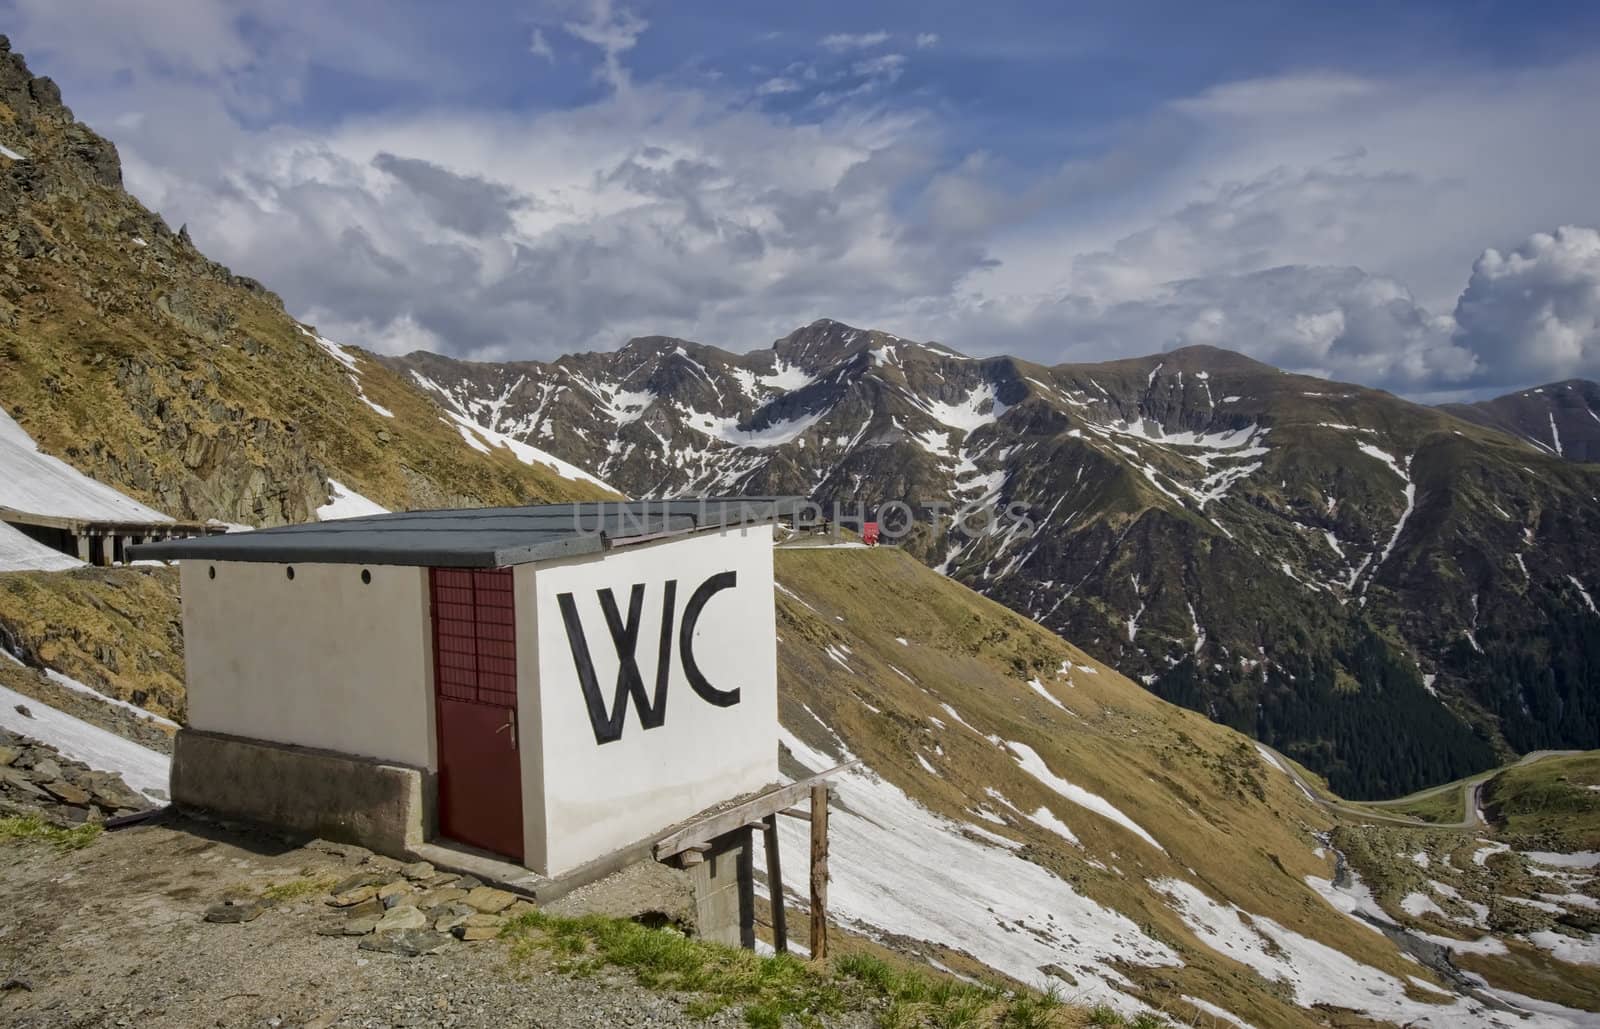 public wc toilette on mountain